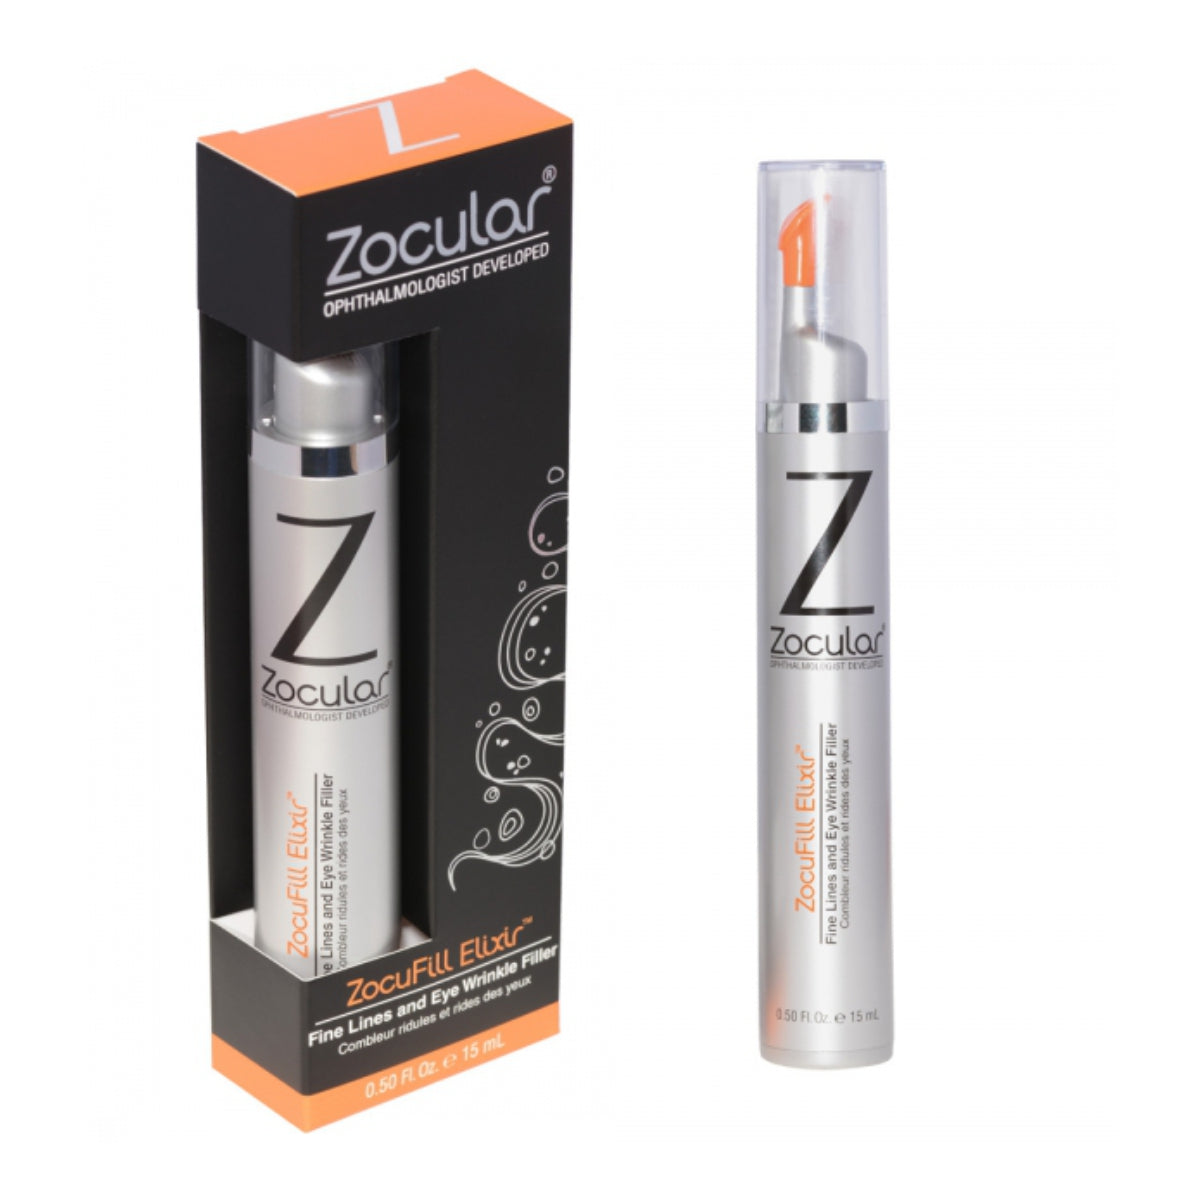 ZocuFill Elixir (1 bottle)